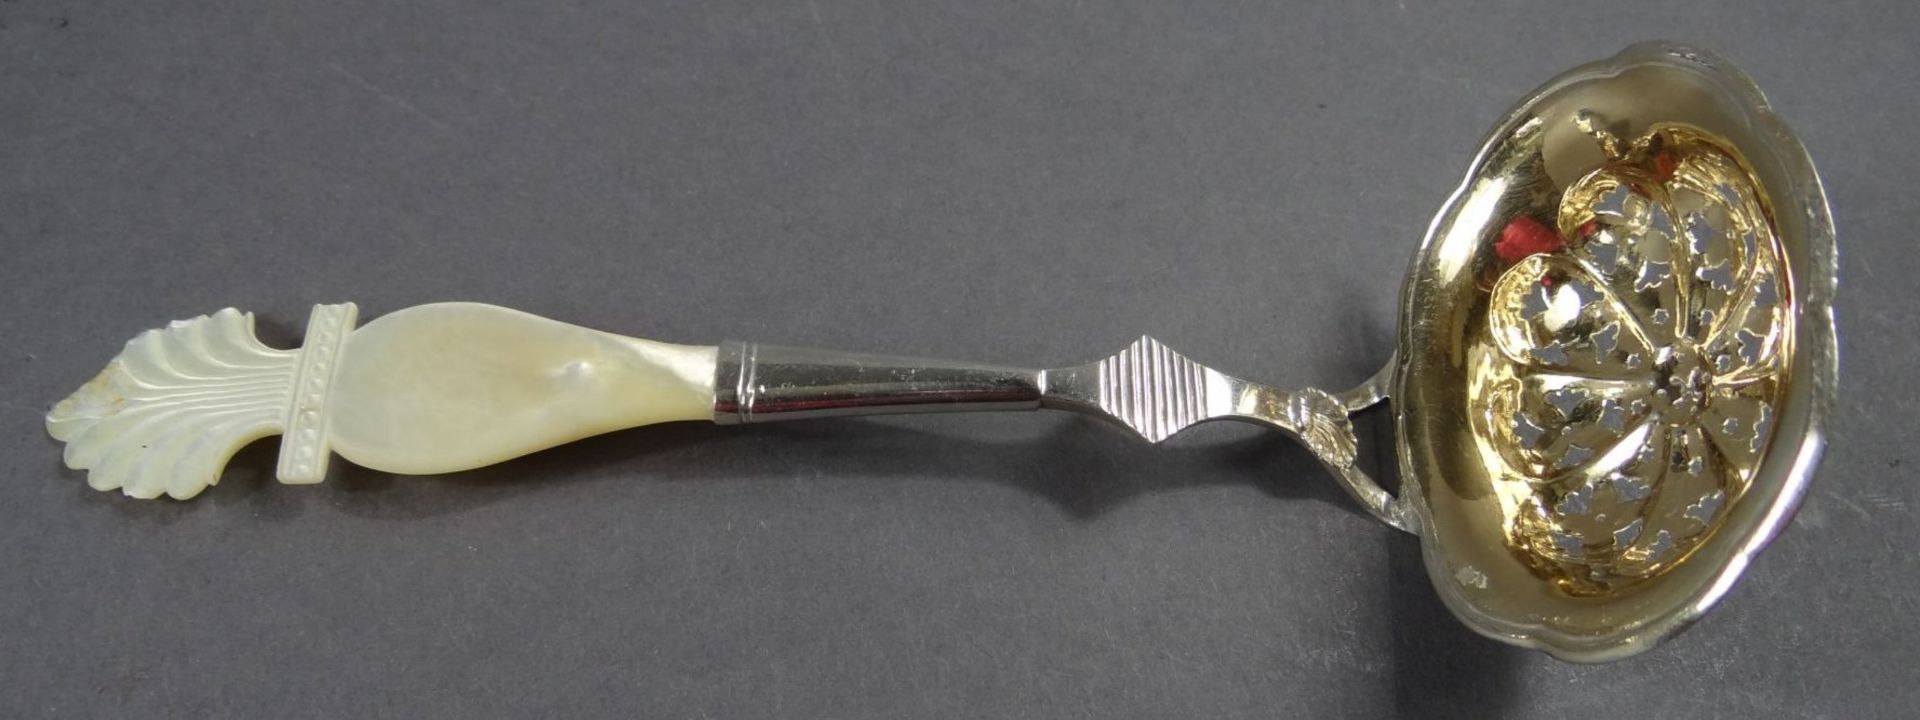 Streulöffel, Silber vergoldet, mit Perlmuttgriff,beschriftet "Münsster", L-18 cm, zus. 33 gr.